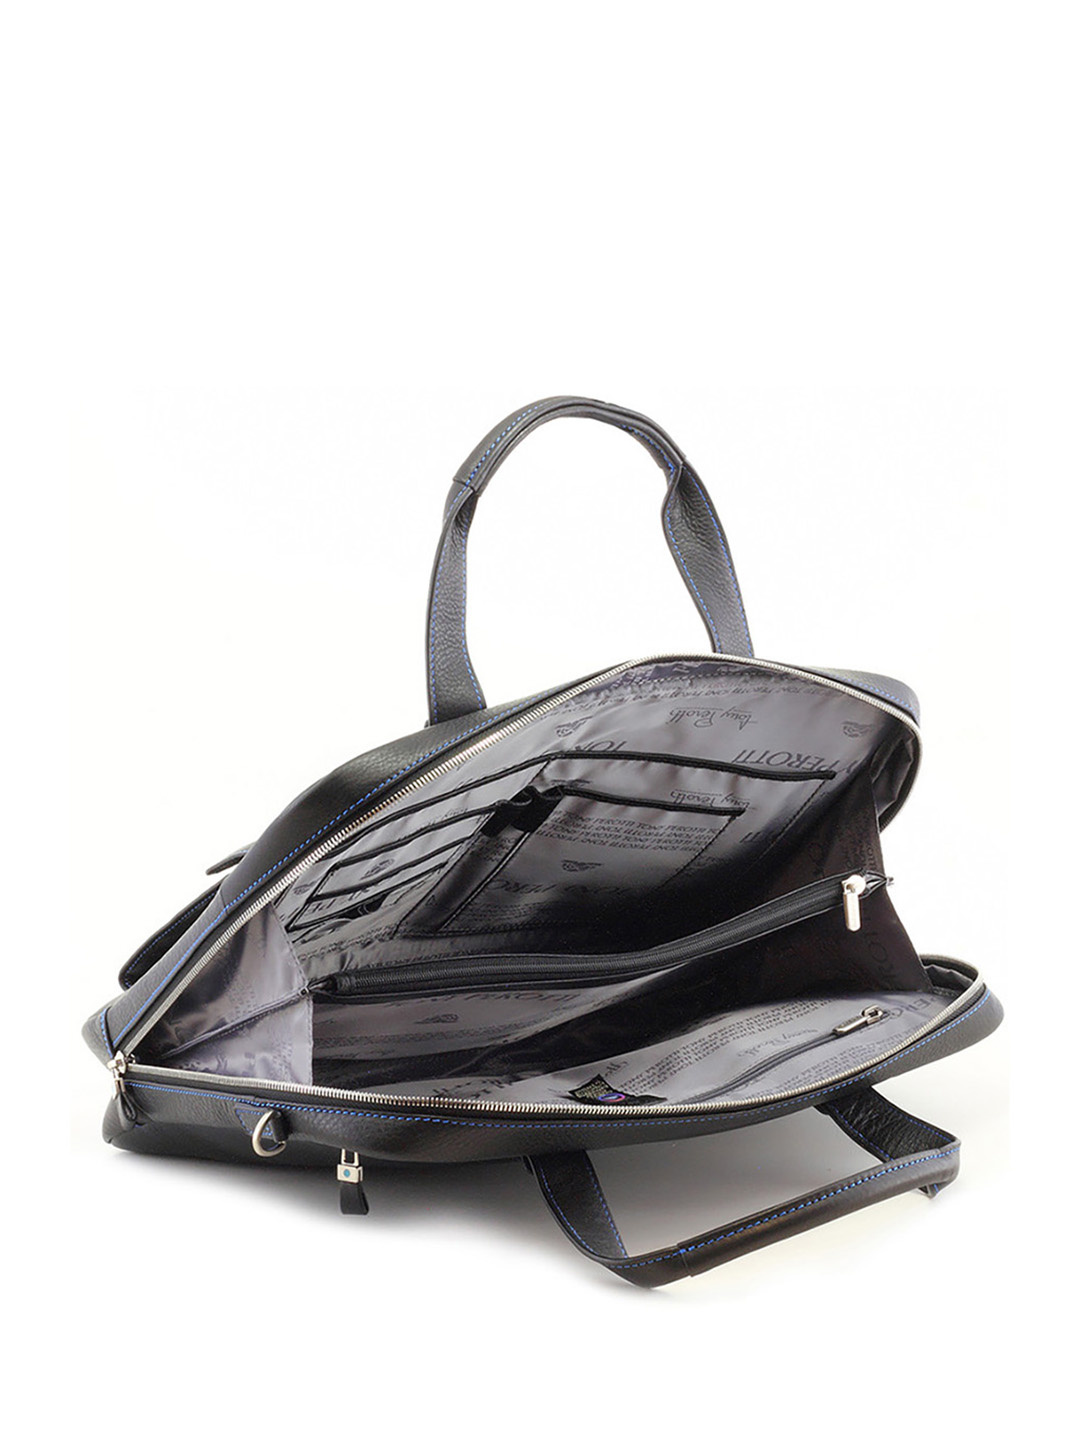 Фото Мужская деловая сумка из натуральной кожи с внешними карманами Деловые сумки (А4)